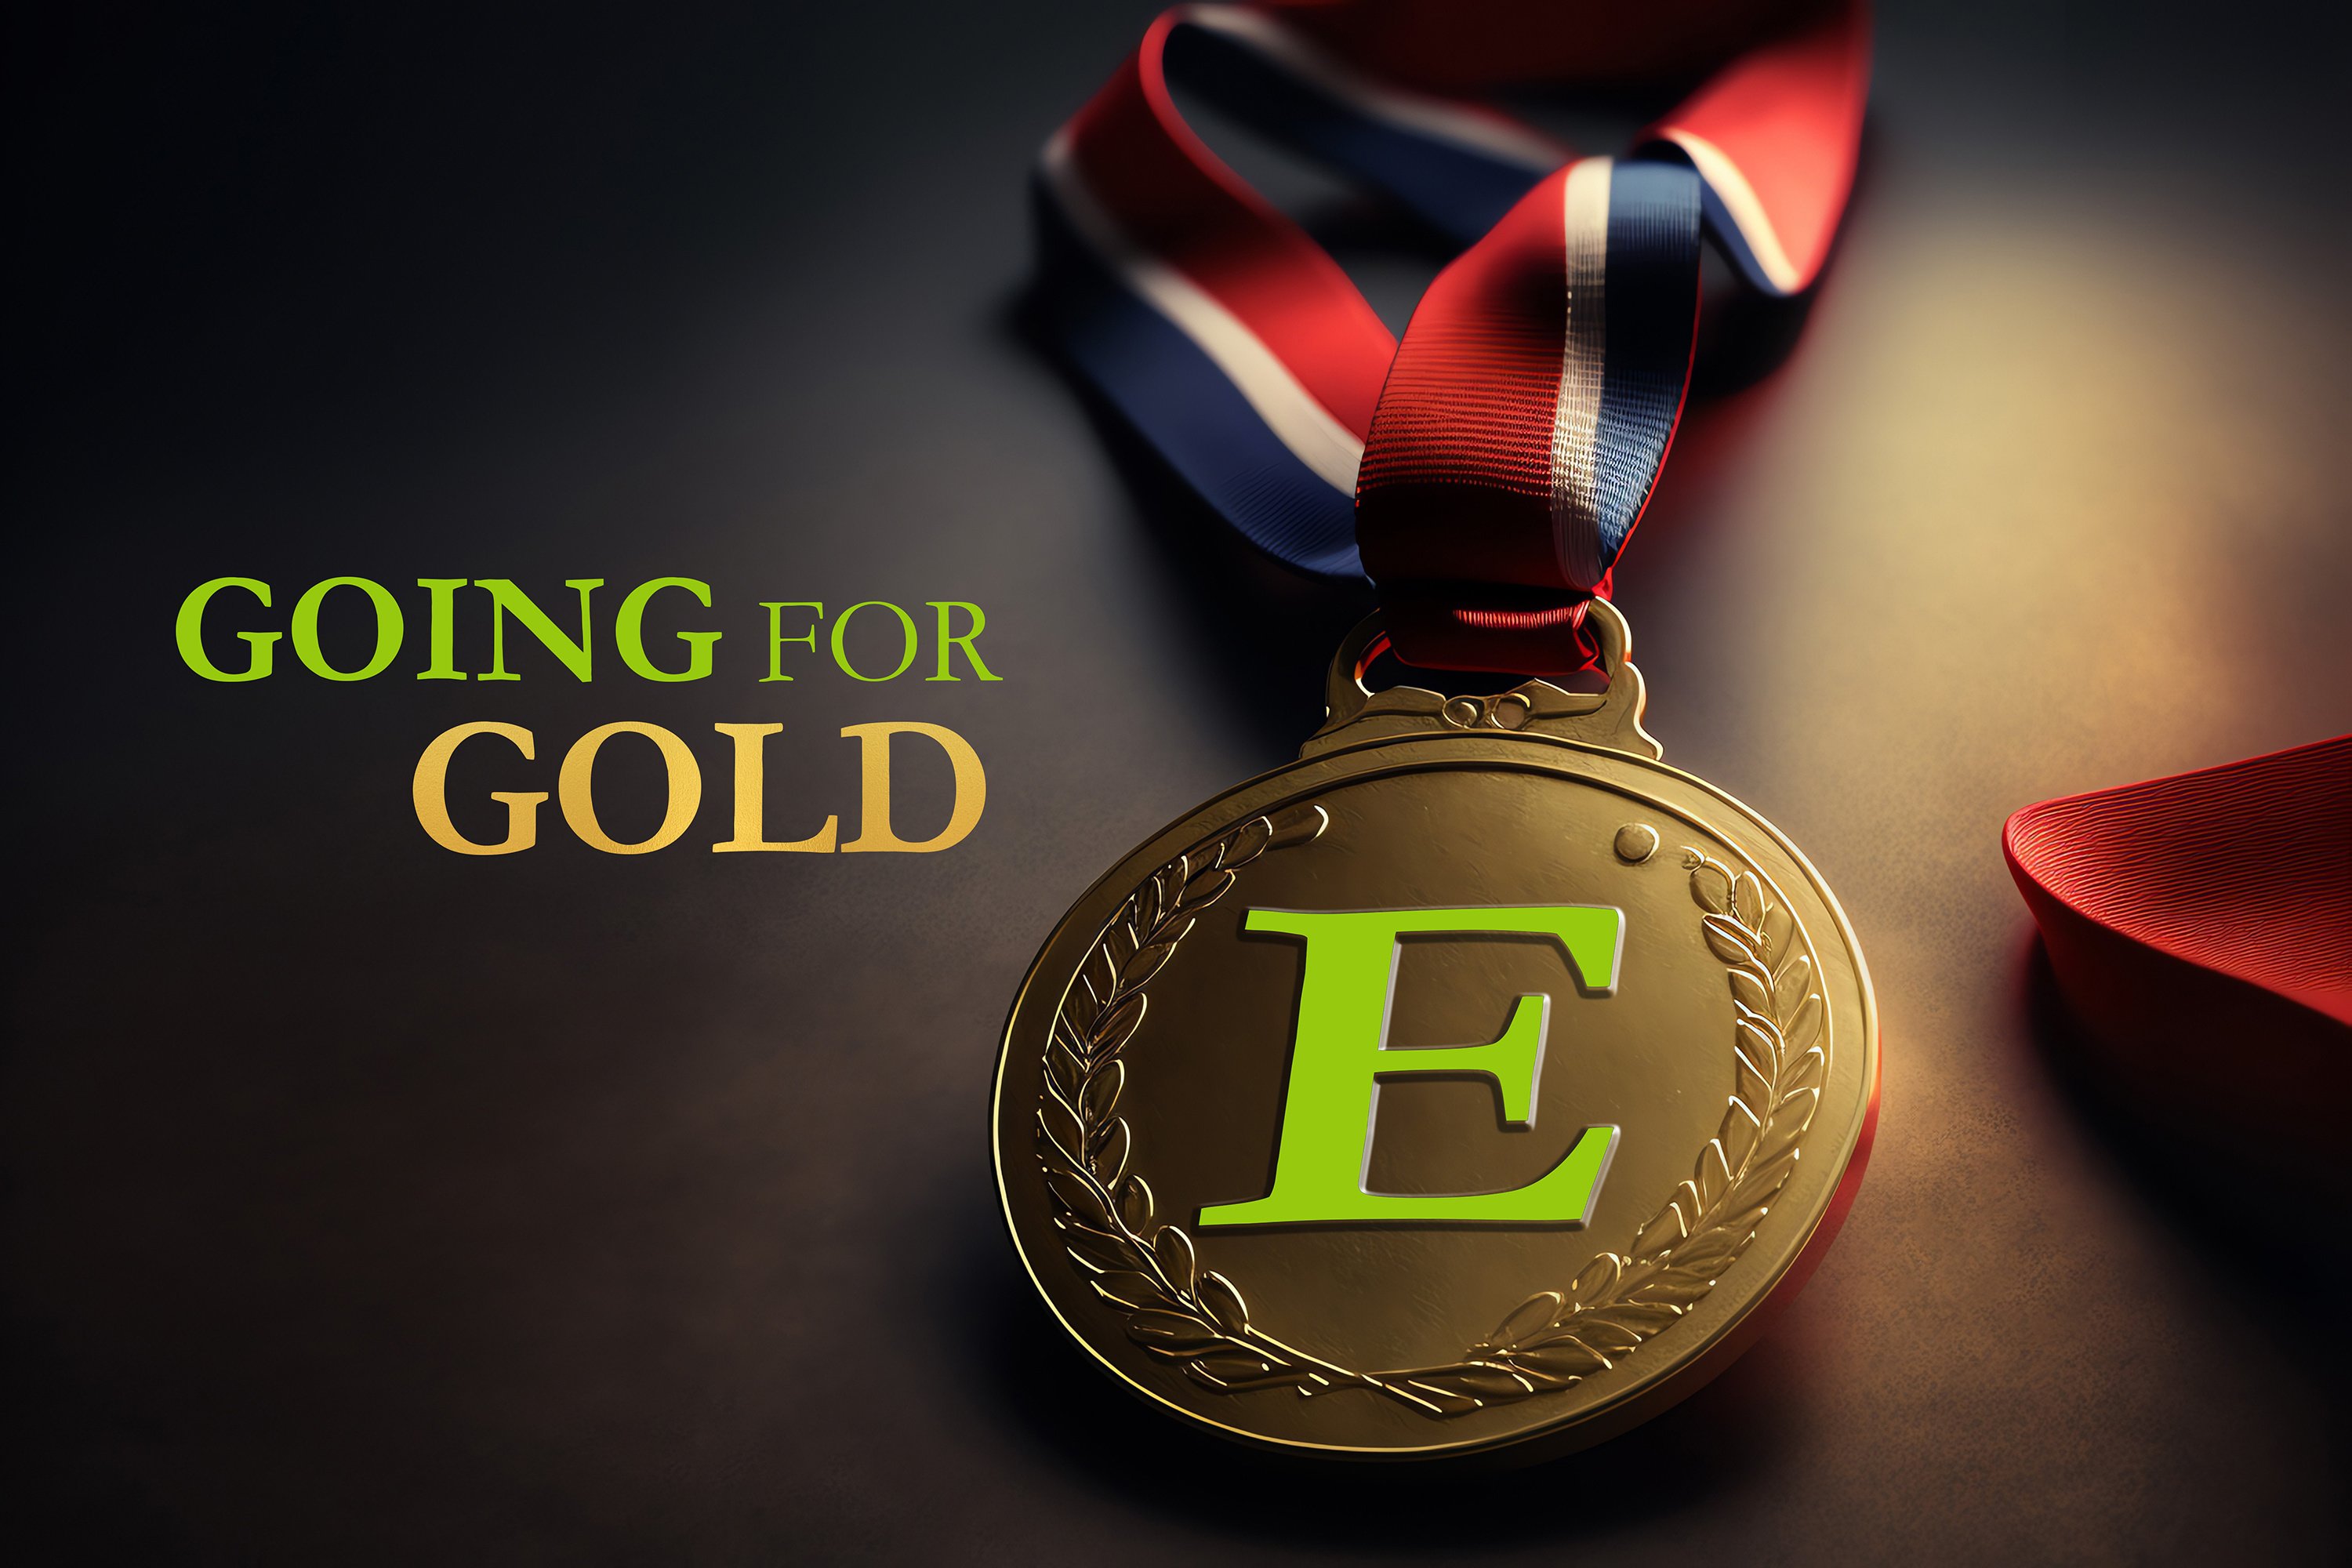 ECLARO E mark on Olympic gold medal